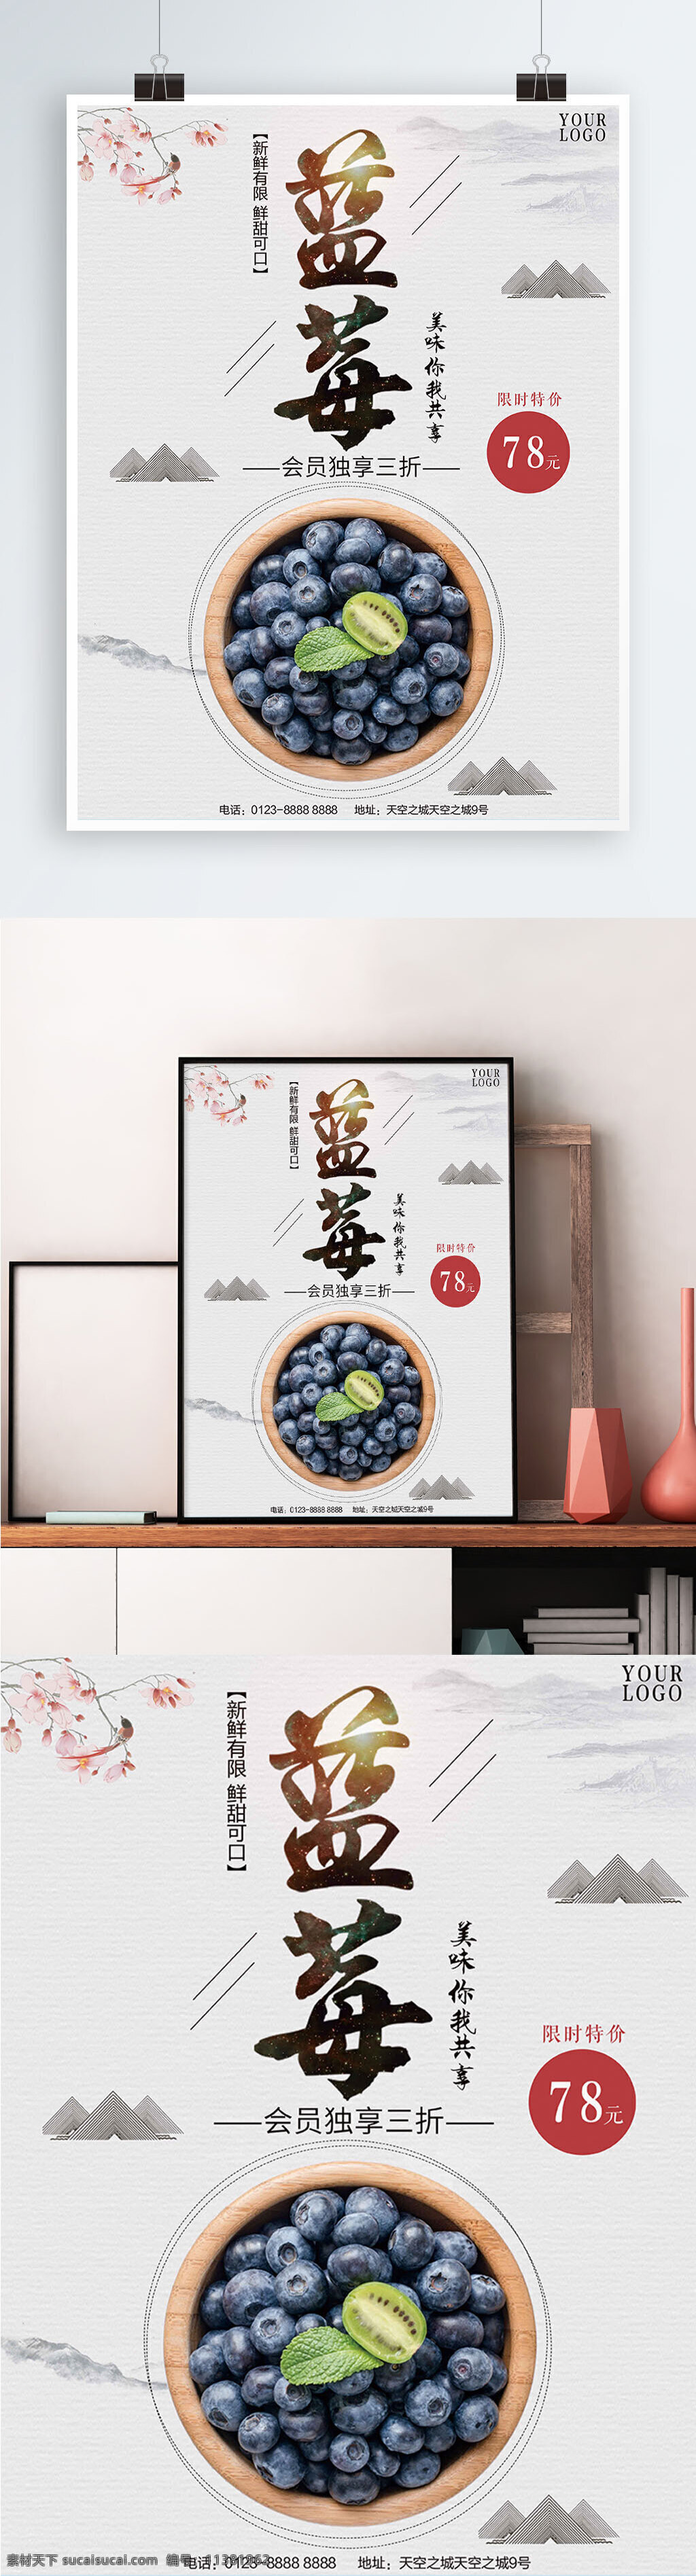 白色 背景 简约 中国 风 美味 蓝莓 宣传海报 健康 水果 中国风